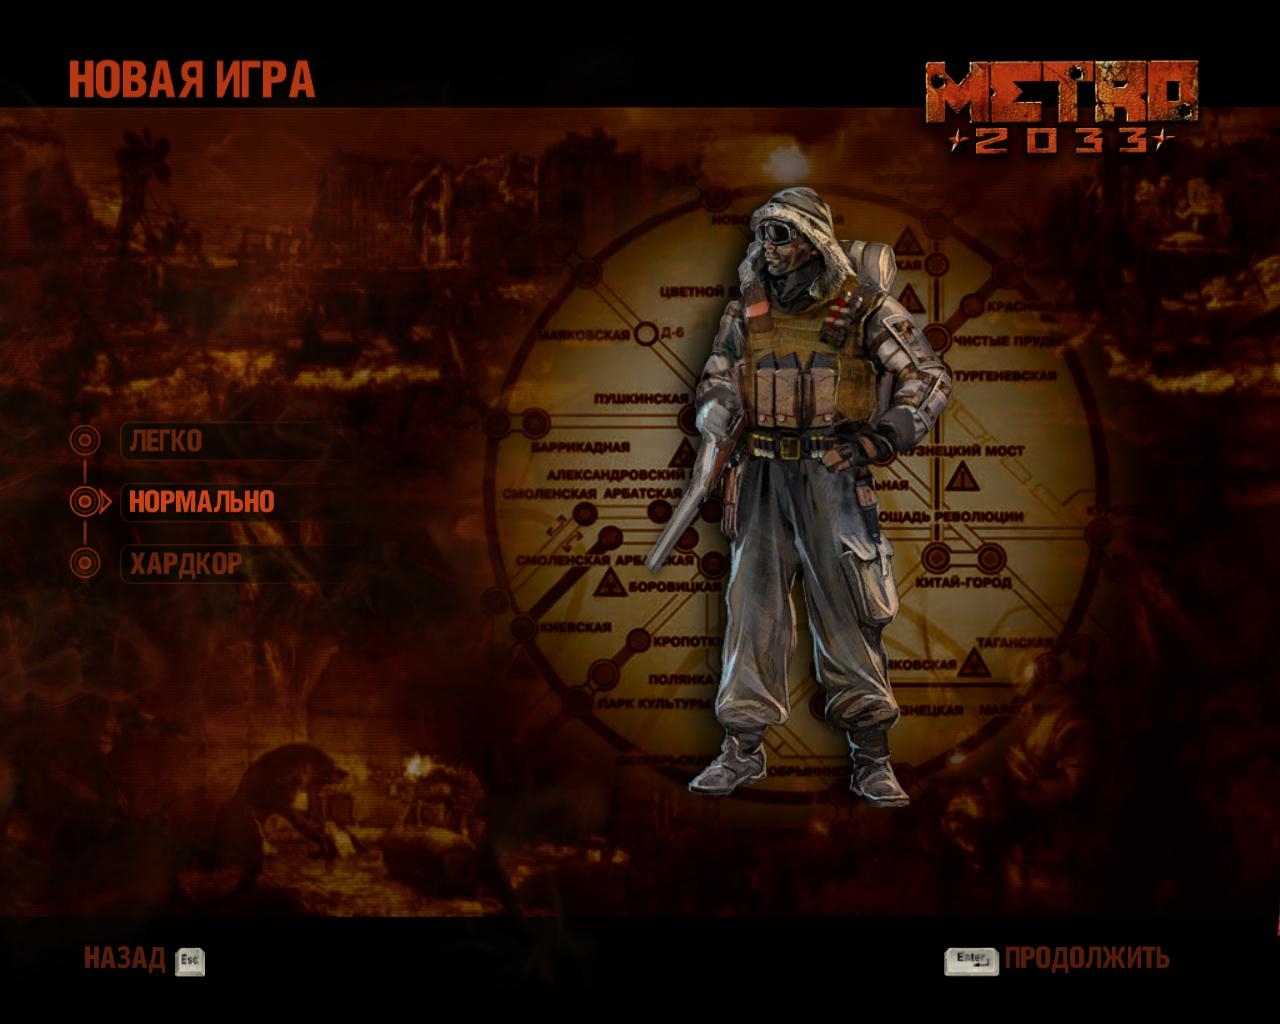 Скриншот из игры Metro 2033 под номером 51